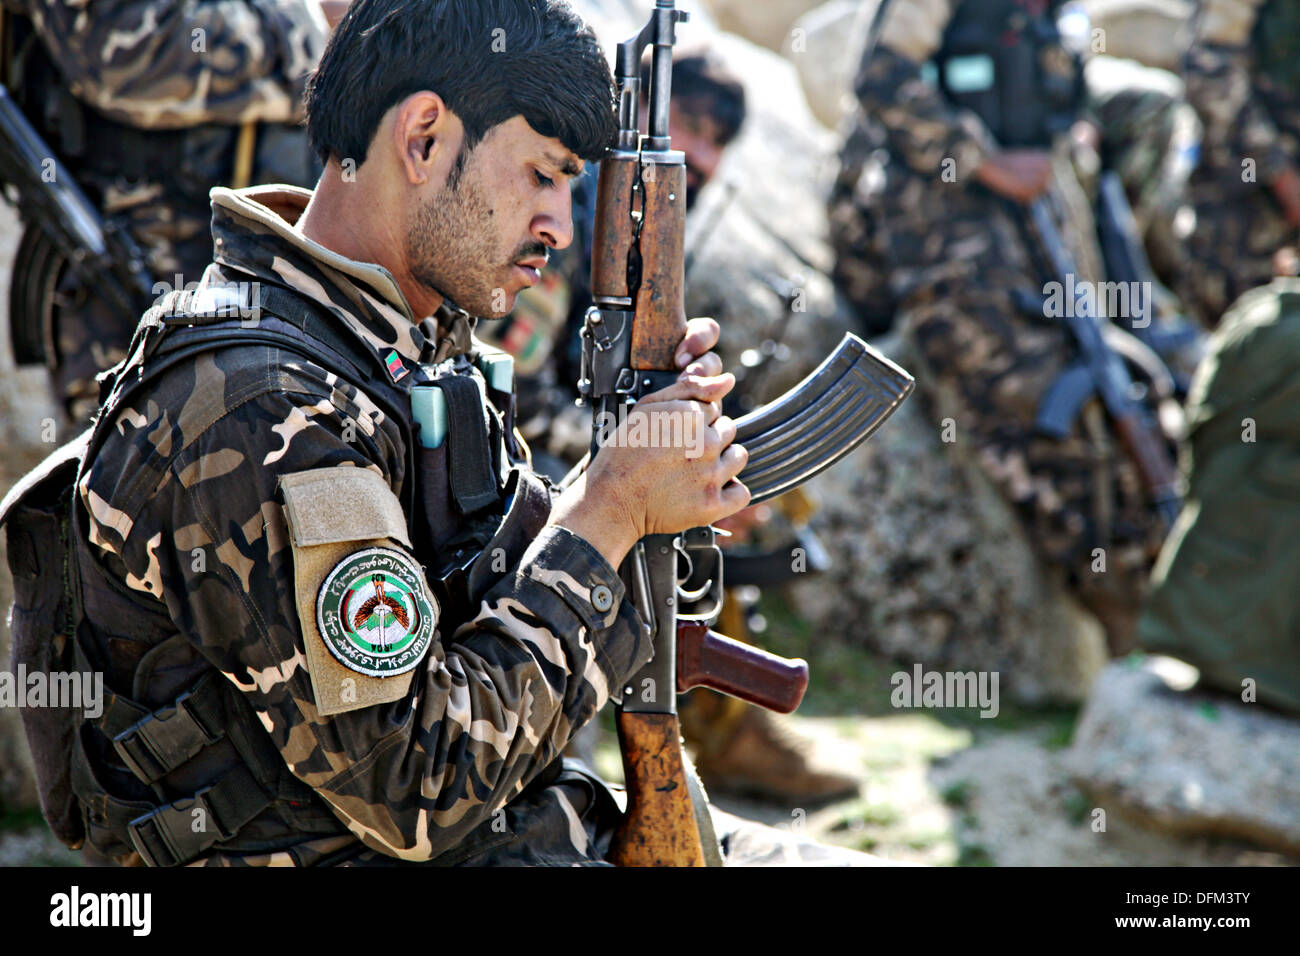 Un nazionale afghano di direzione del soldato di sicurezza esamina la sua arma dopo una missione Febbraio 20, 2013 nei pressi del villaggio di Abu Zai nella provincia di Laghman, Afghanistan. Foto Stock